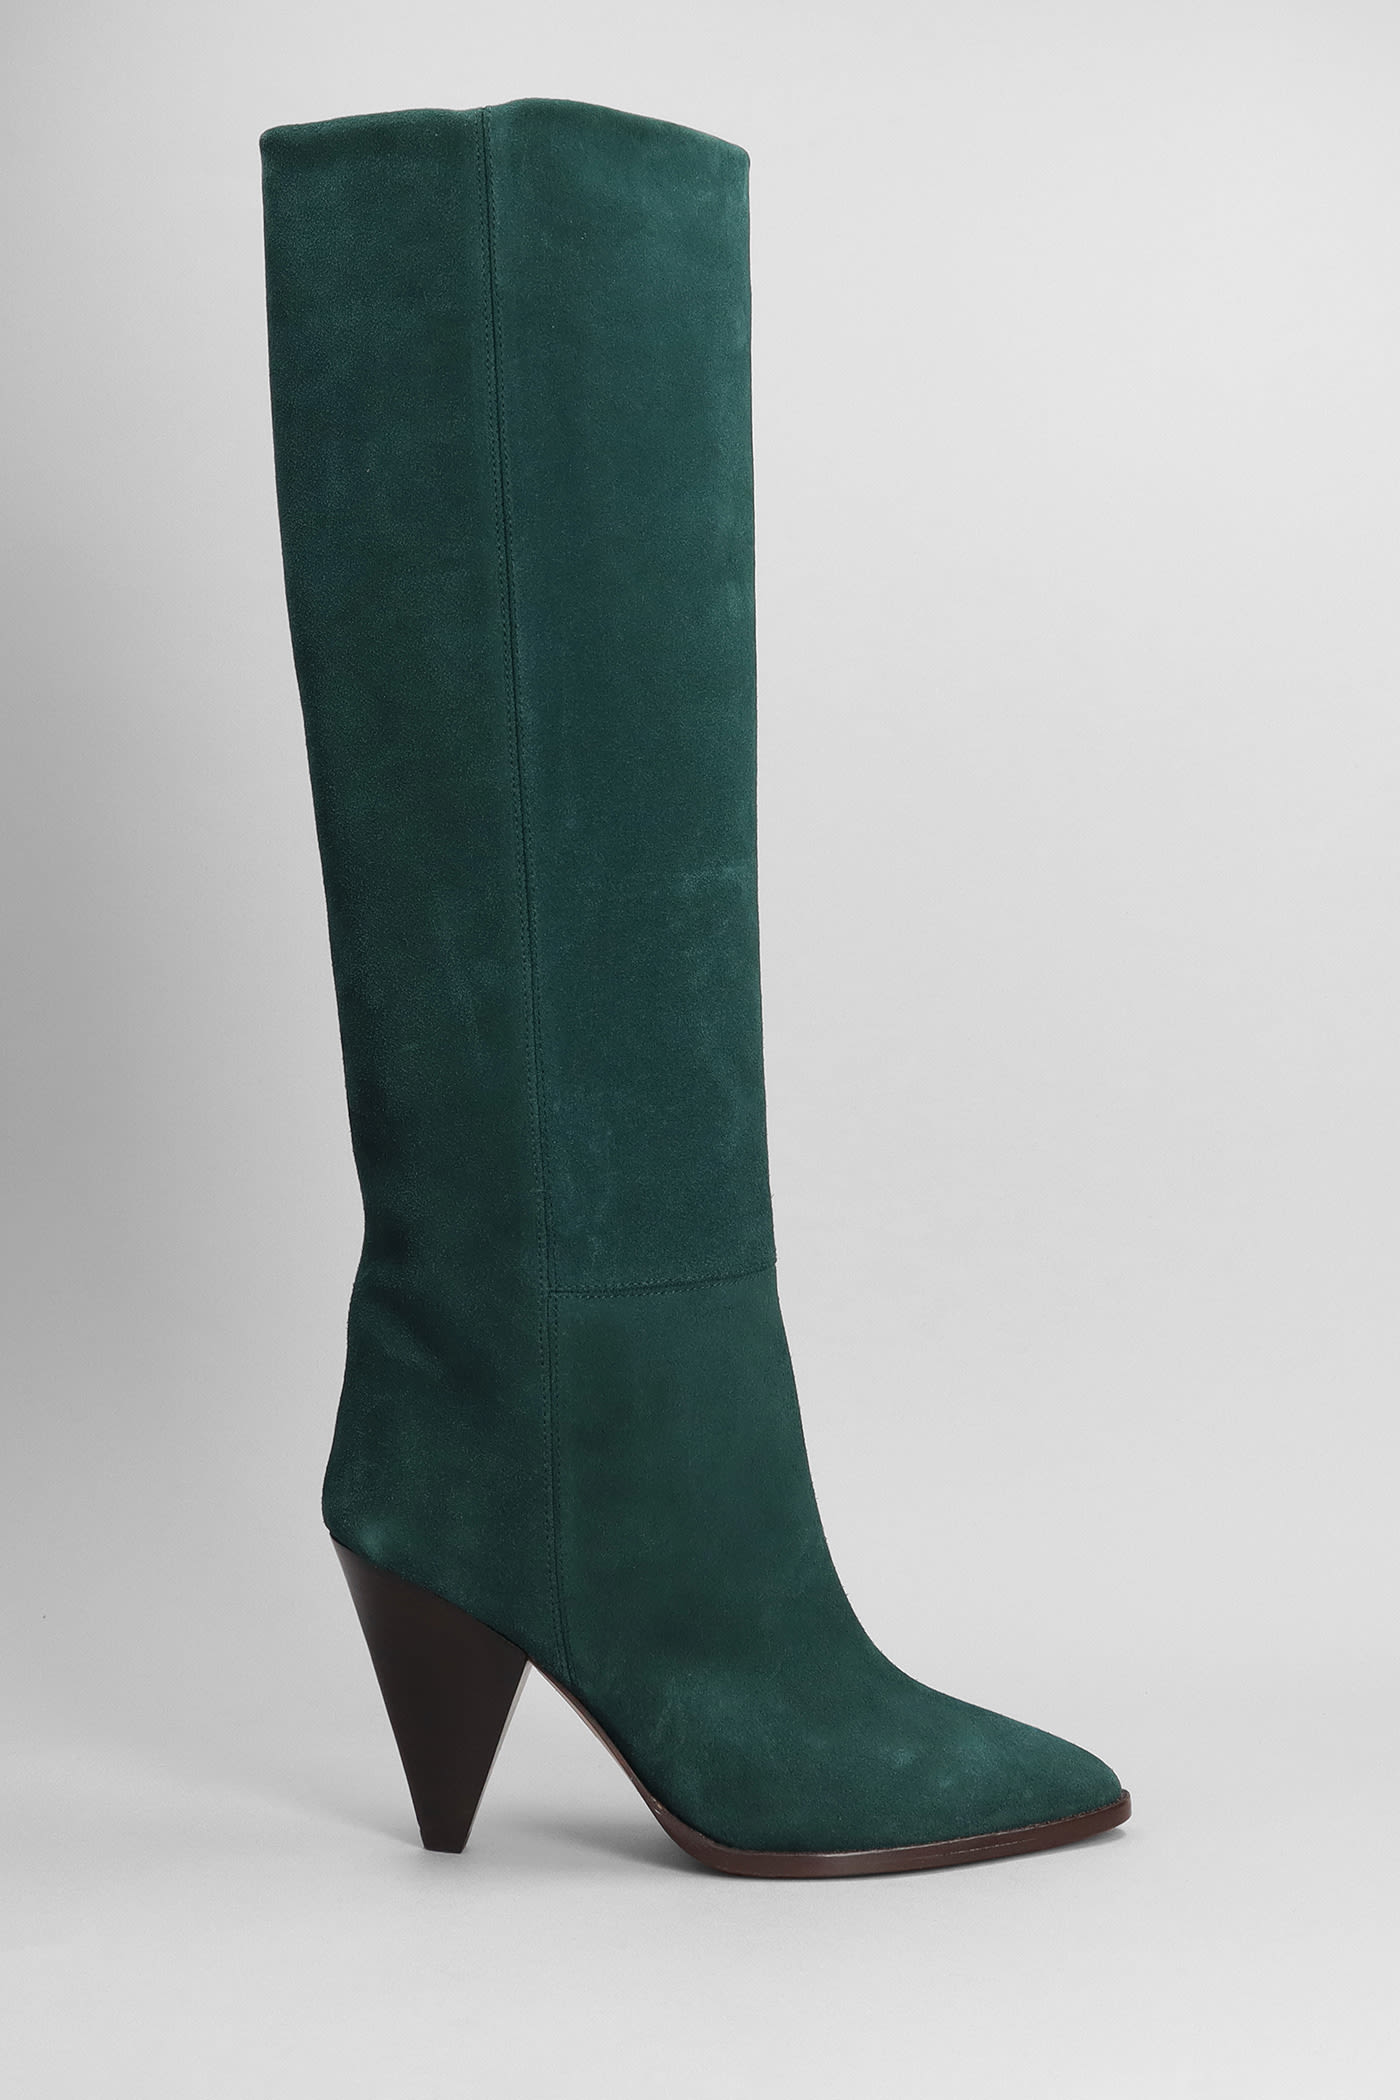 Ririo High Heels Boots In Green Suede